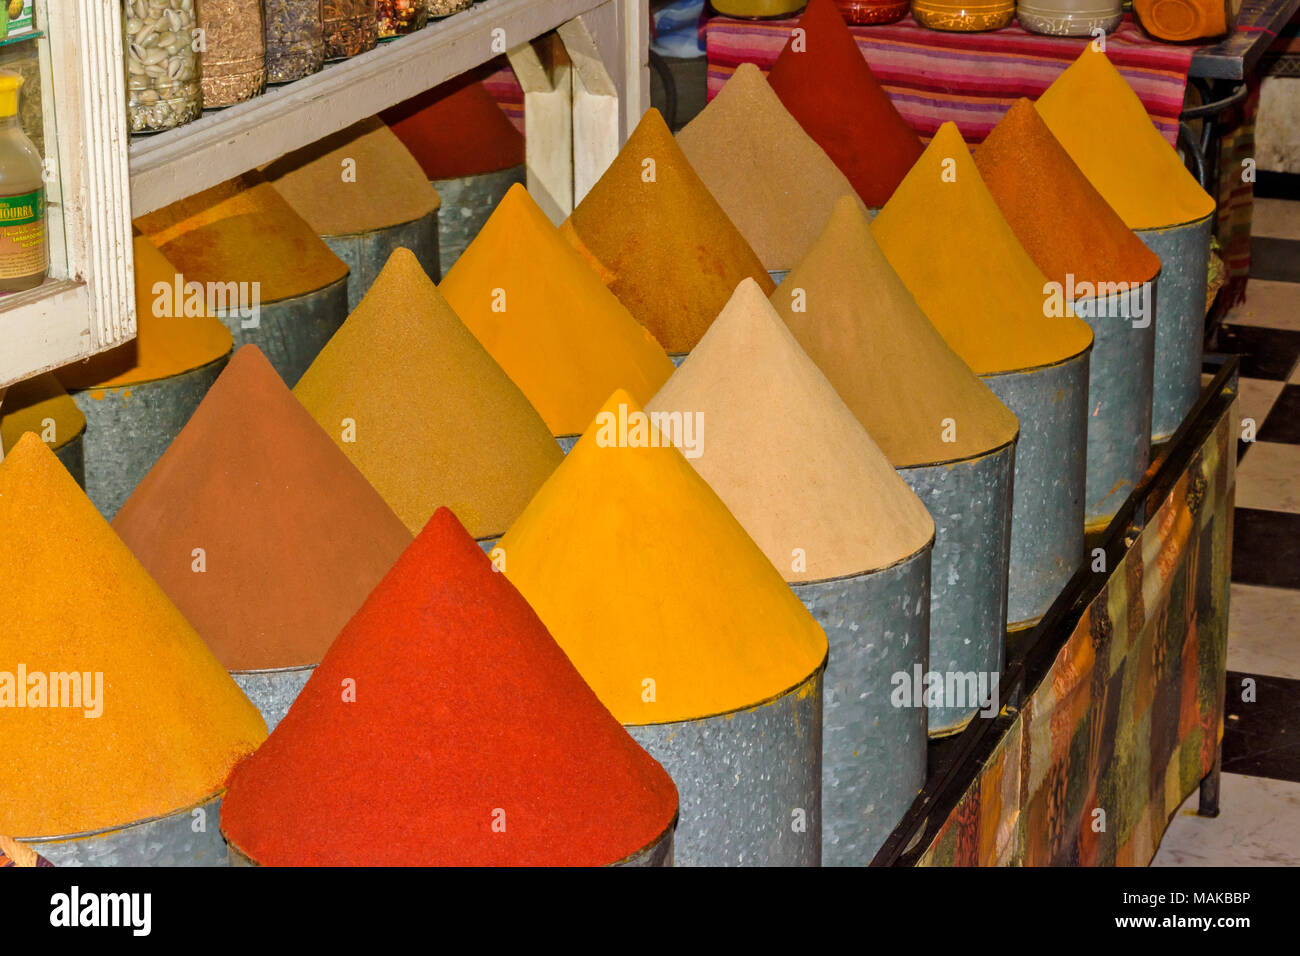 Il Marocco Marrakech Jemaa el Fna MEDINA SOUK coni colorati di spezie entro contenitori metallici Foto Stock